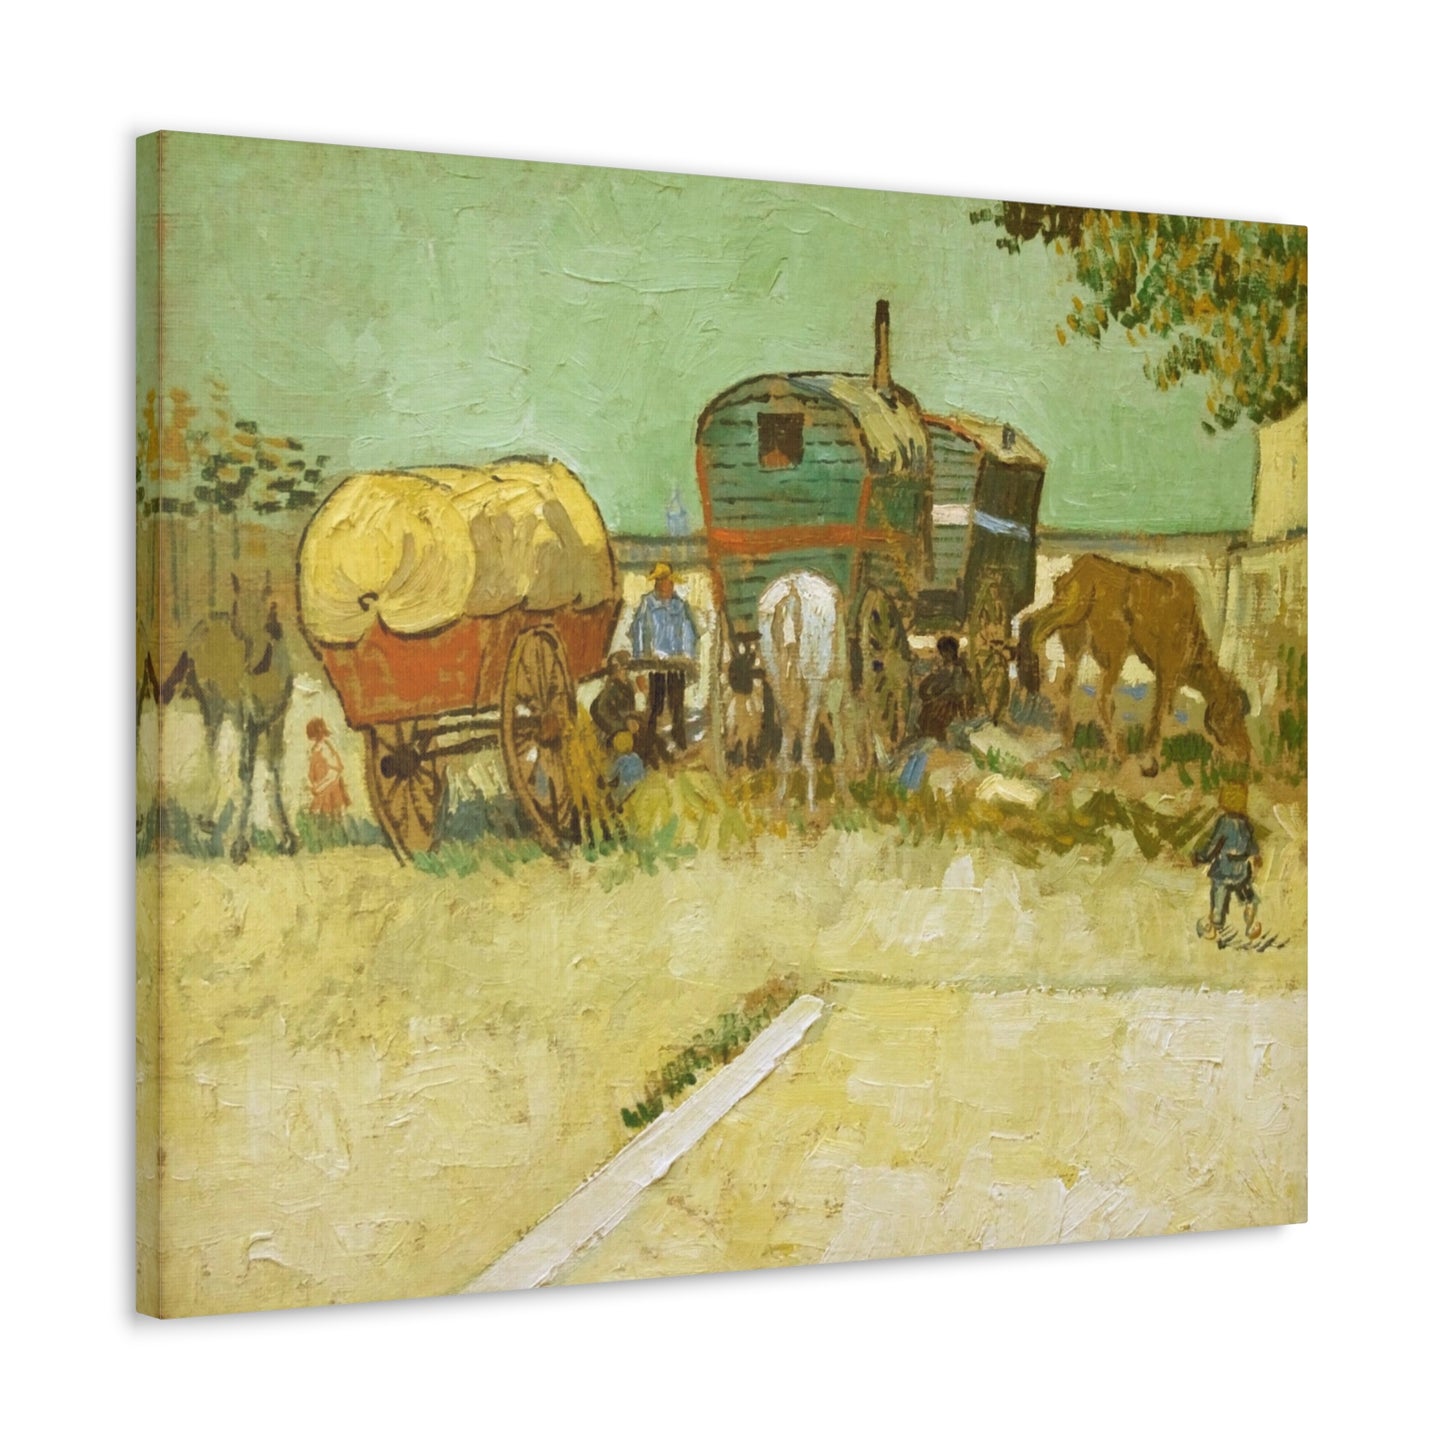 Encampment of Gypsies with Caravans - By Vincent Van Gogh